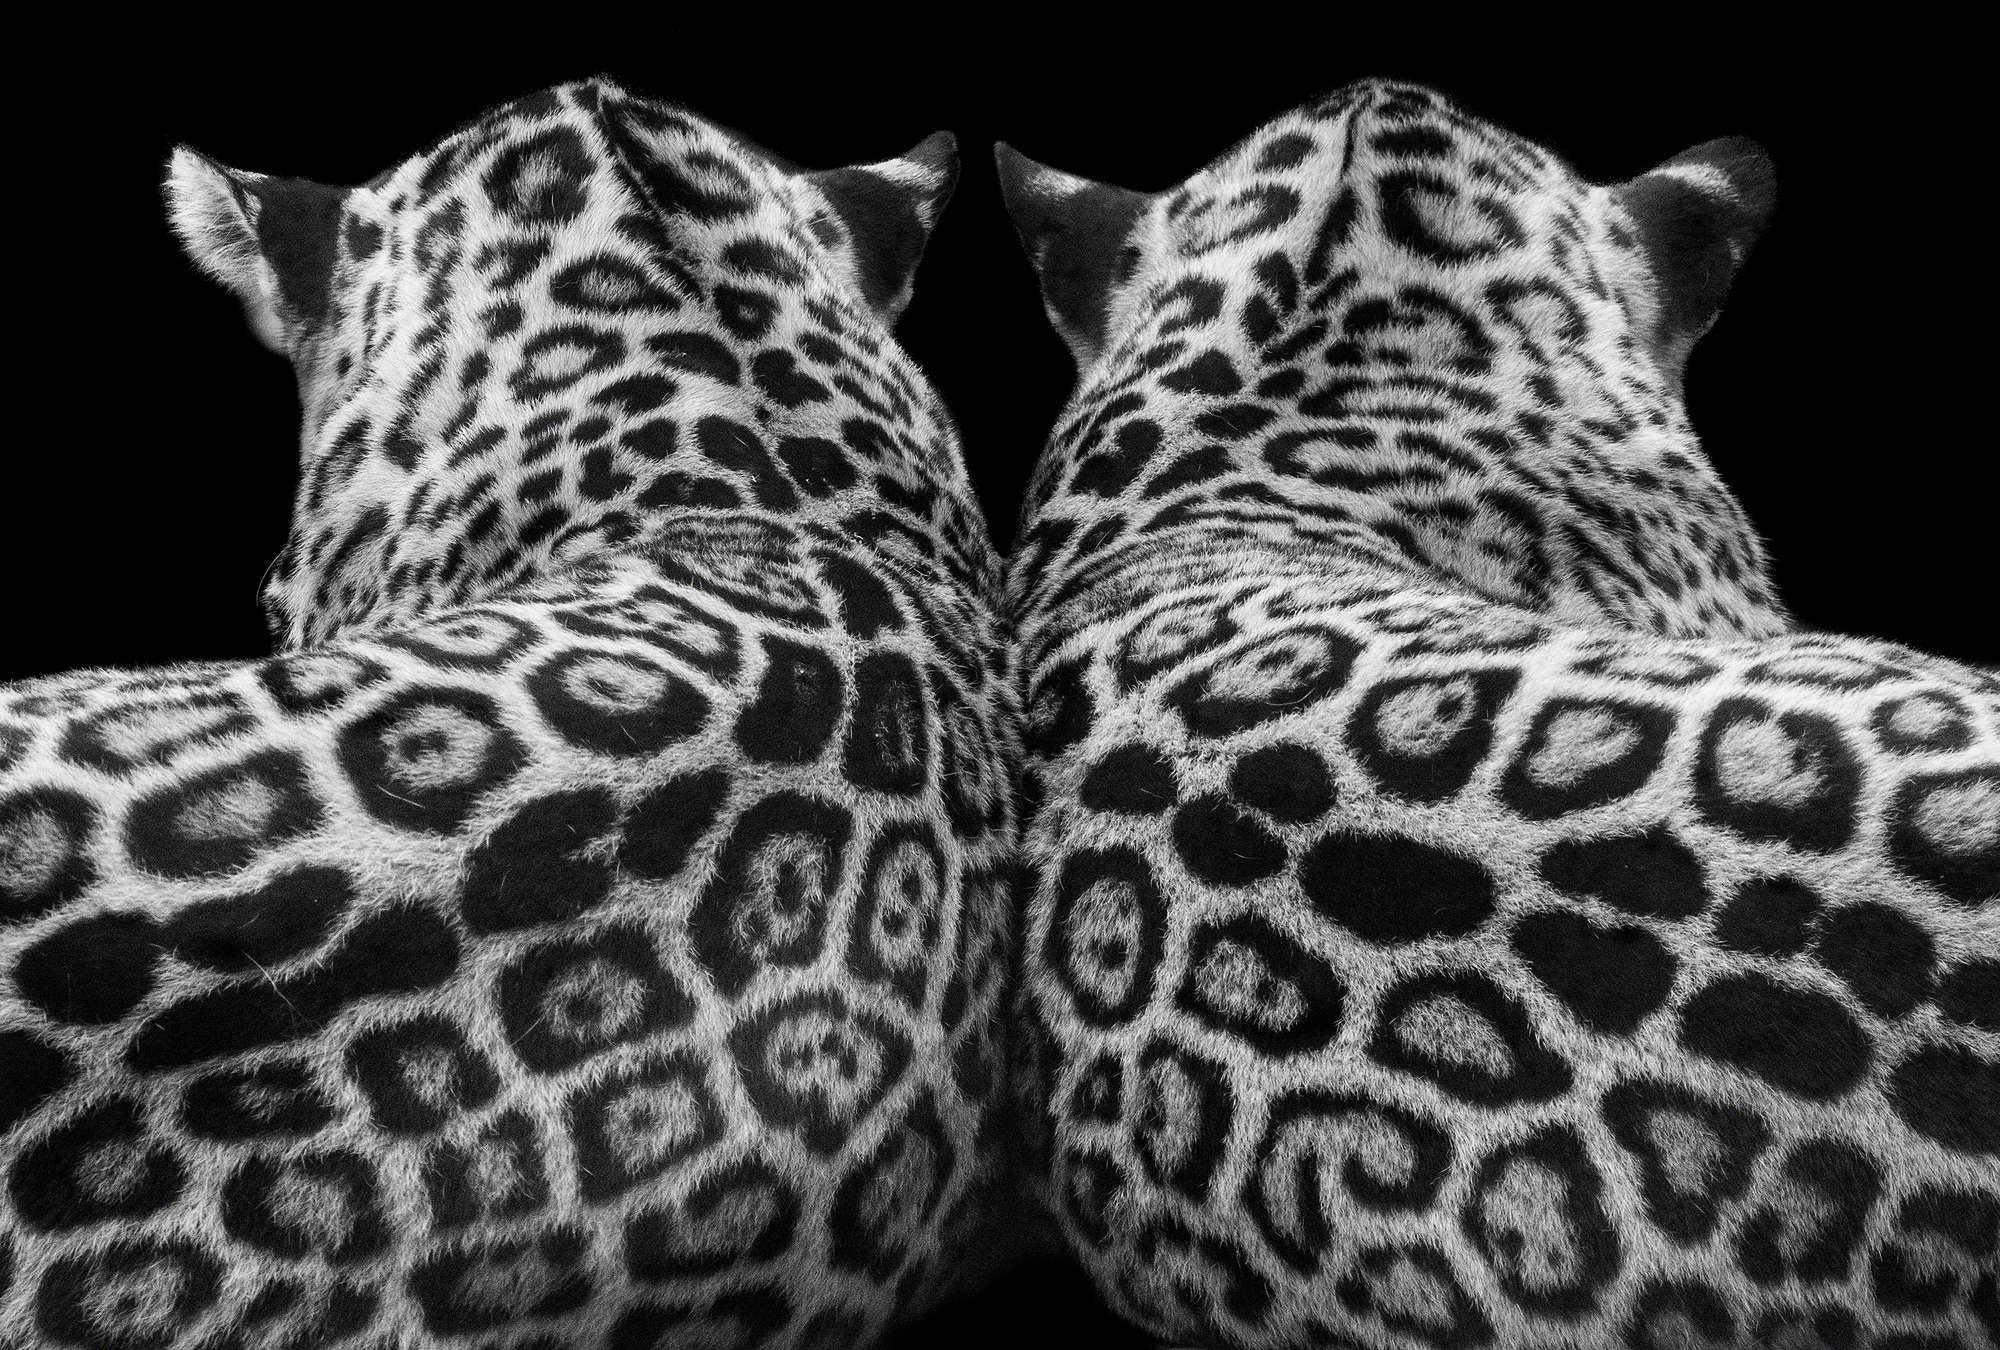             Coppia di leopardi su sfondo nero
        